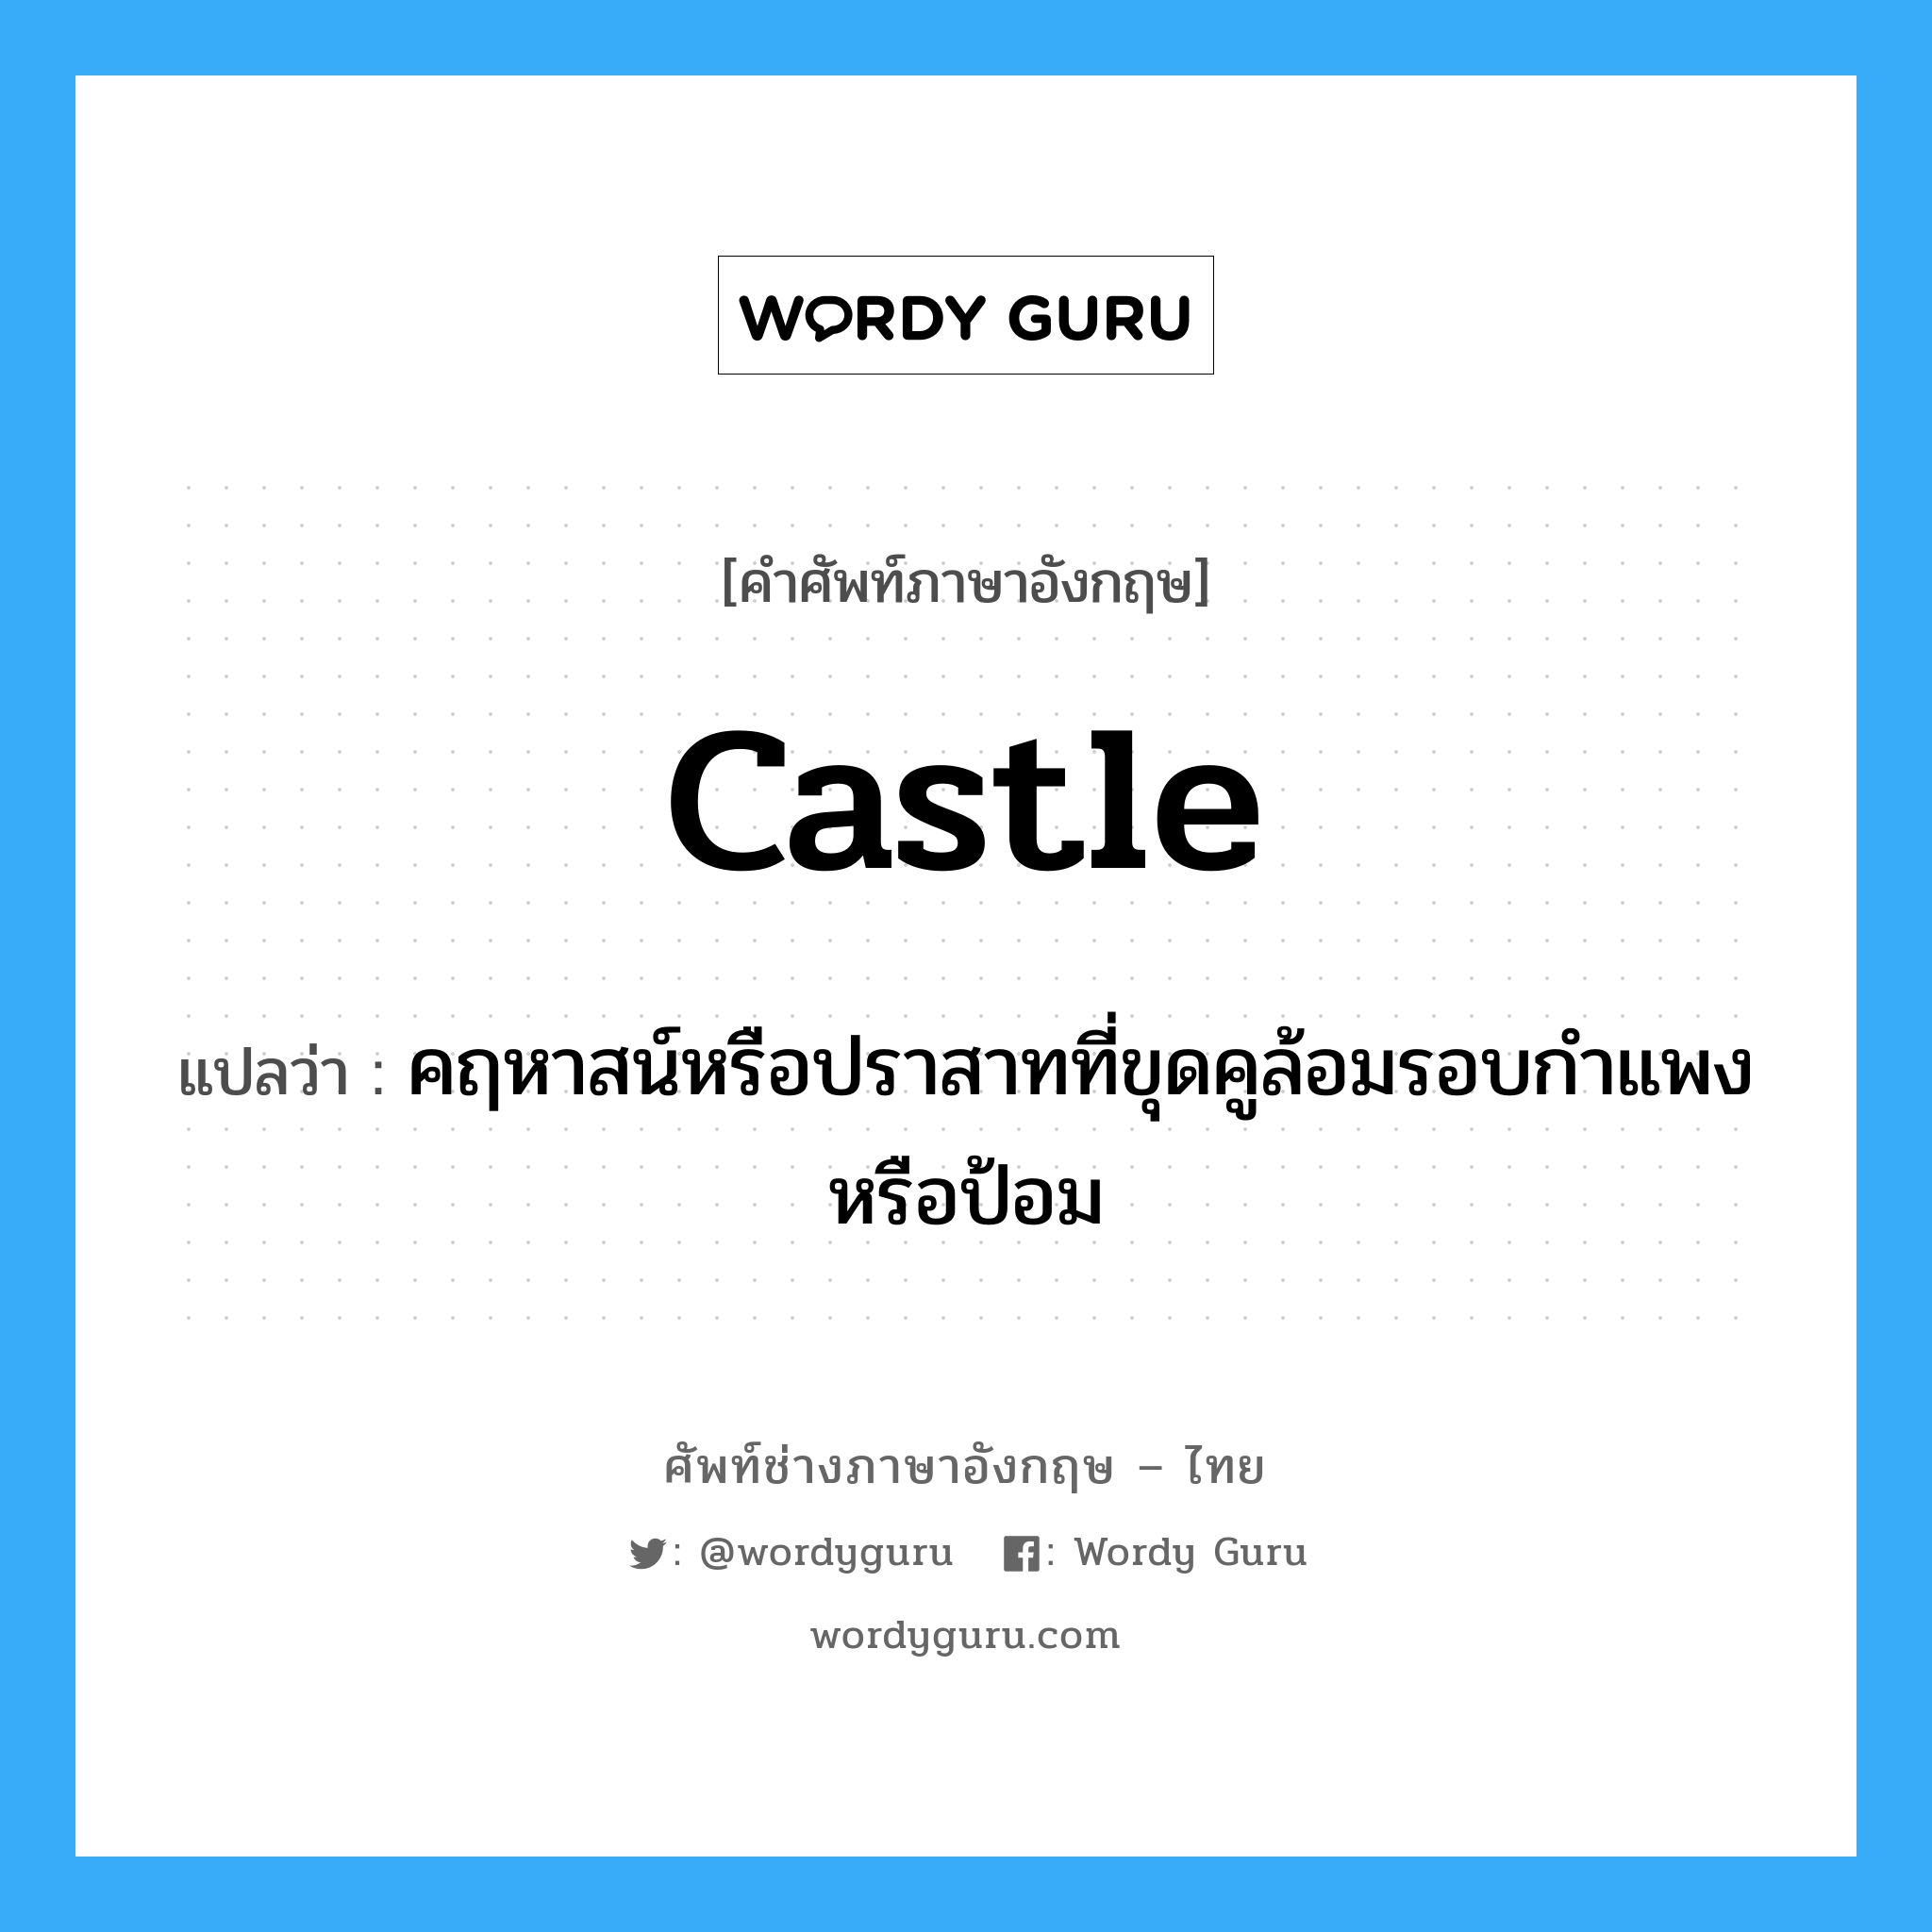 castle แปลว่า?, คำศัพท์ช่างภาษาอังกฤษ - ไทย castle คำศัพท์ภาษาอังกฤษ castle แปลว่า คฤหาสน์หรือปราสาทที่ขุดคูล้อมรอบกำแพง หรือป้อม